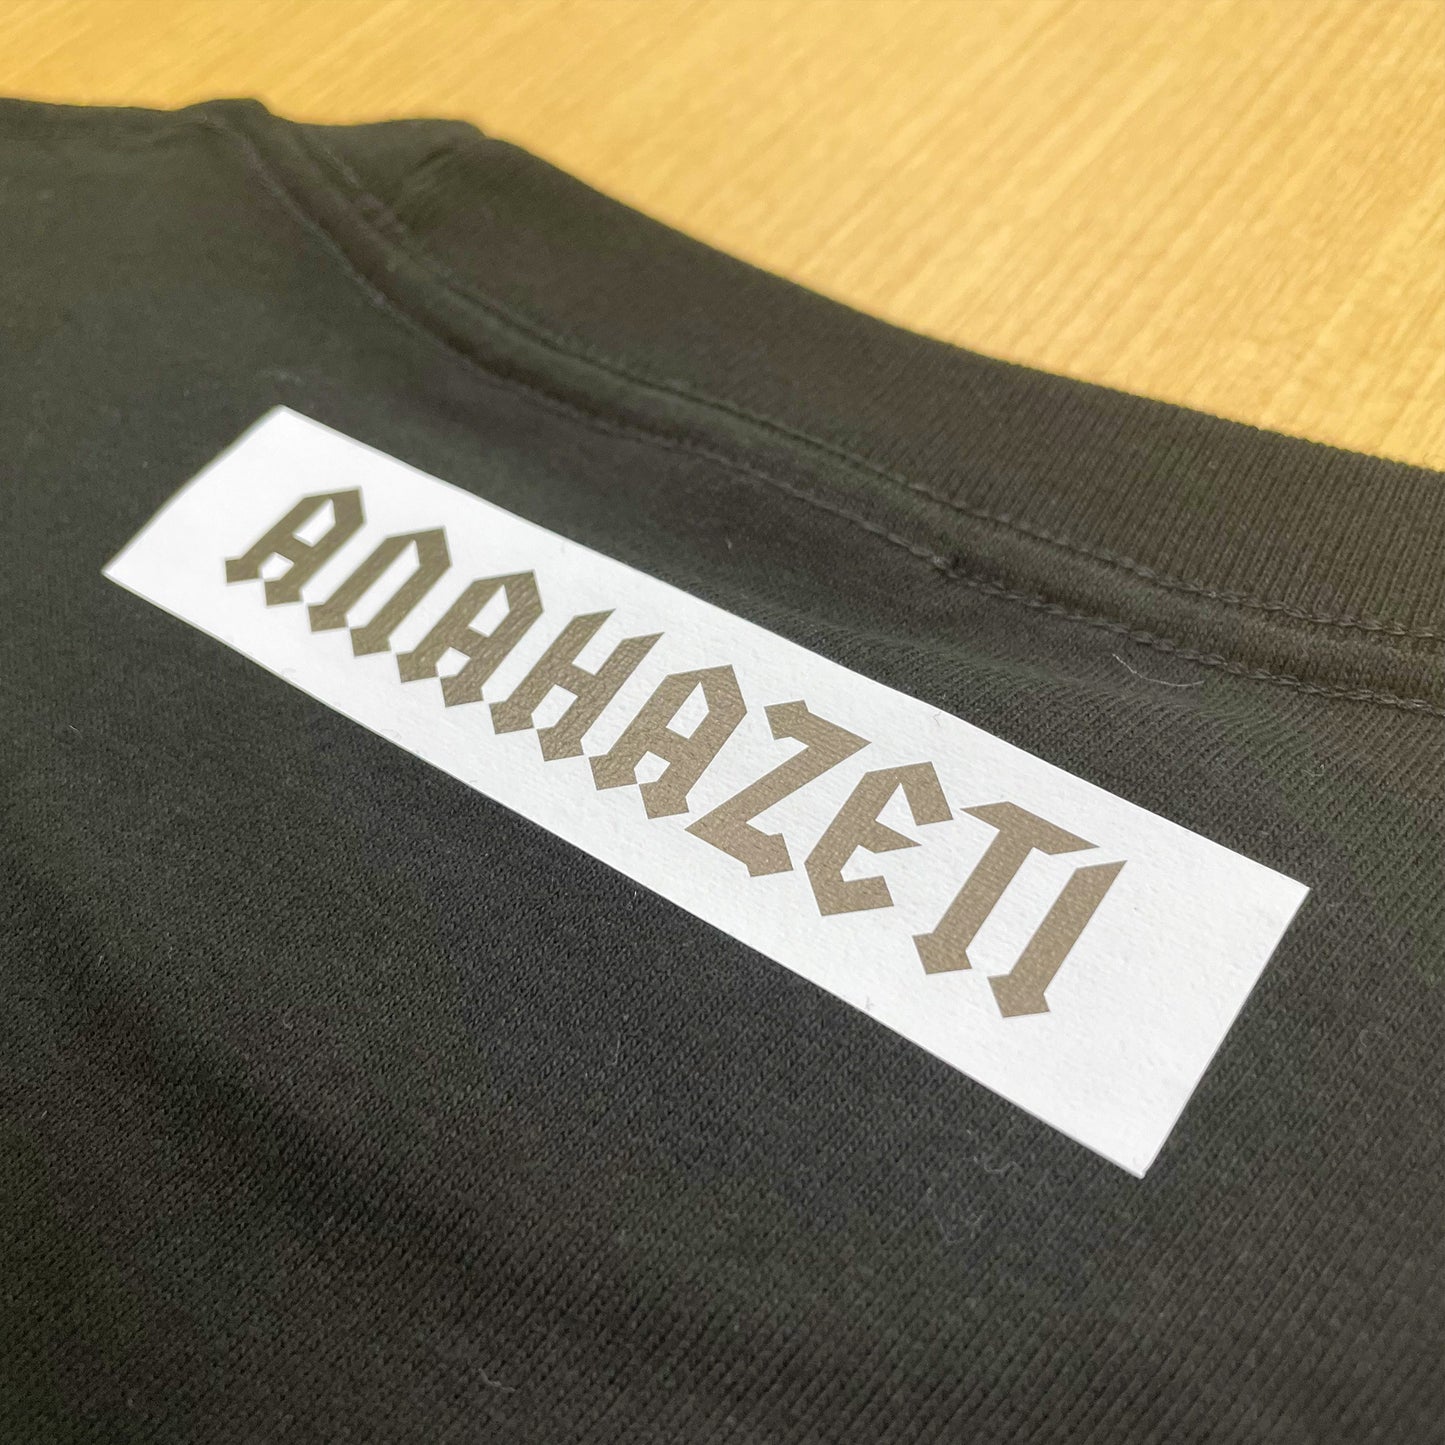 アナハゼティロゴTシャツ(半袖) ブラック